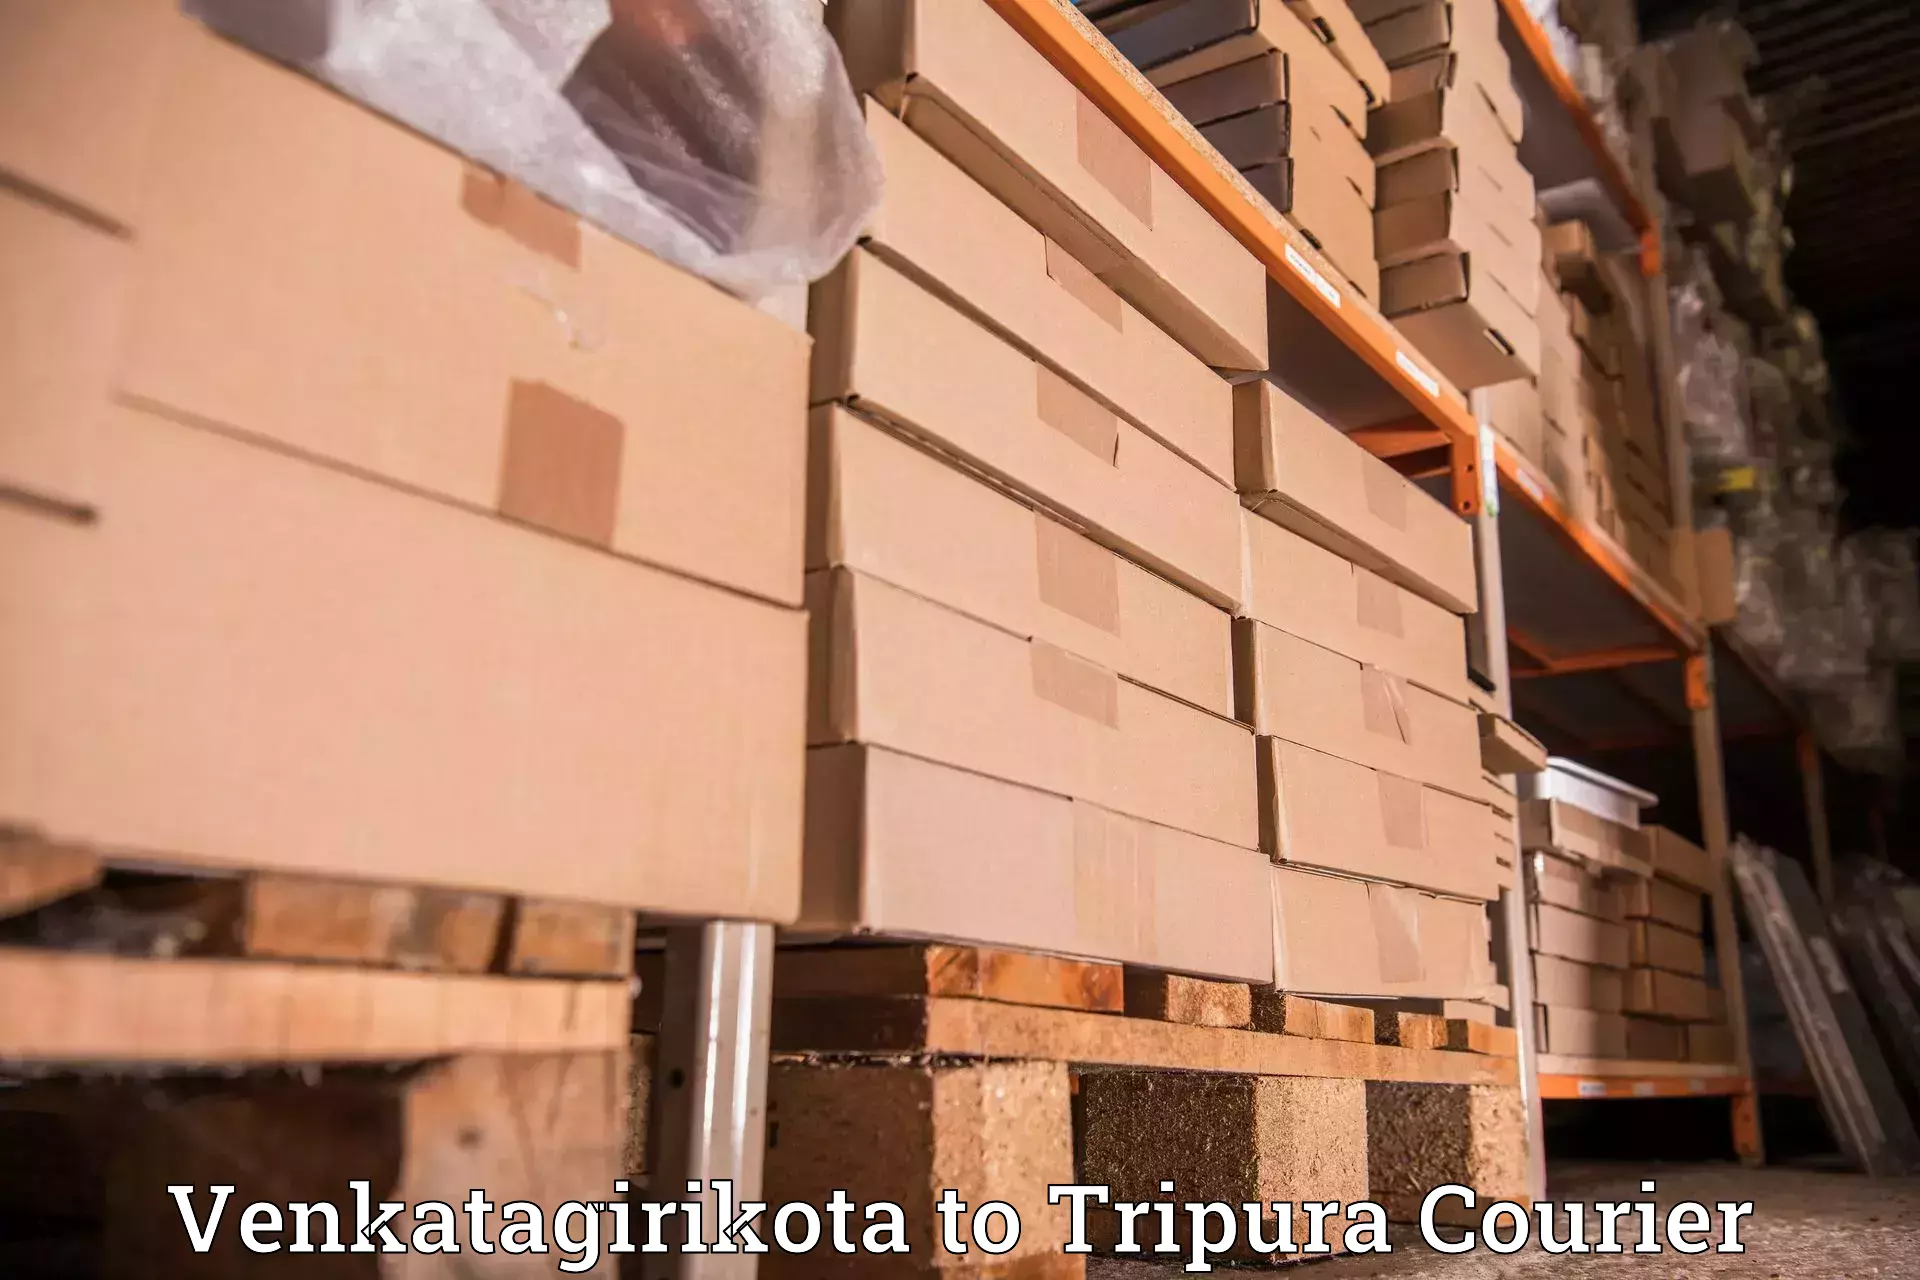 Courier services in Venkatagirikota to NIT Agartala